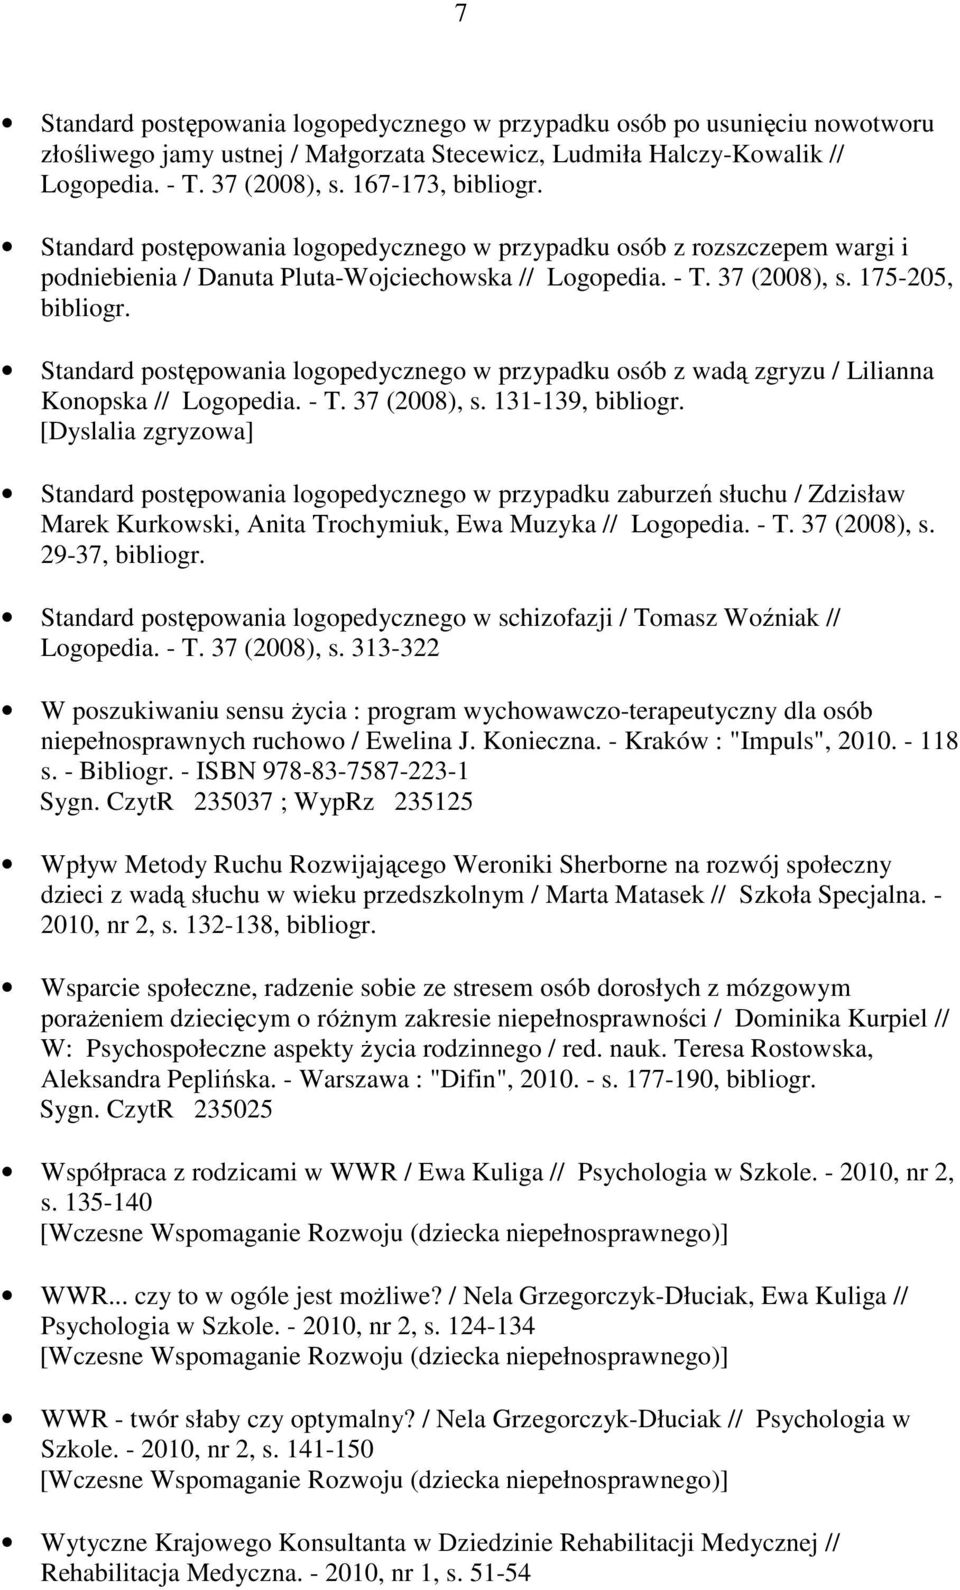 175-205, Standard postępowania logopedycznego w przypadku osób z wadą zgryzu / Lilianna Konopska // Logopedia. - T. 37 (2008), s.